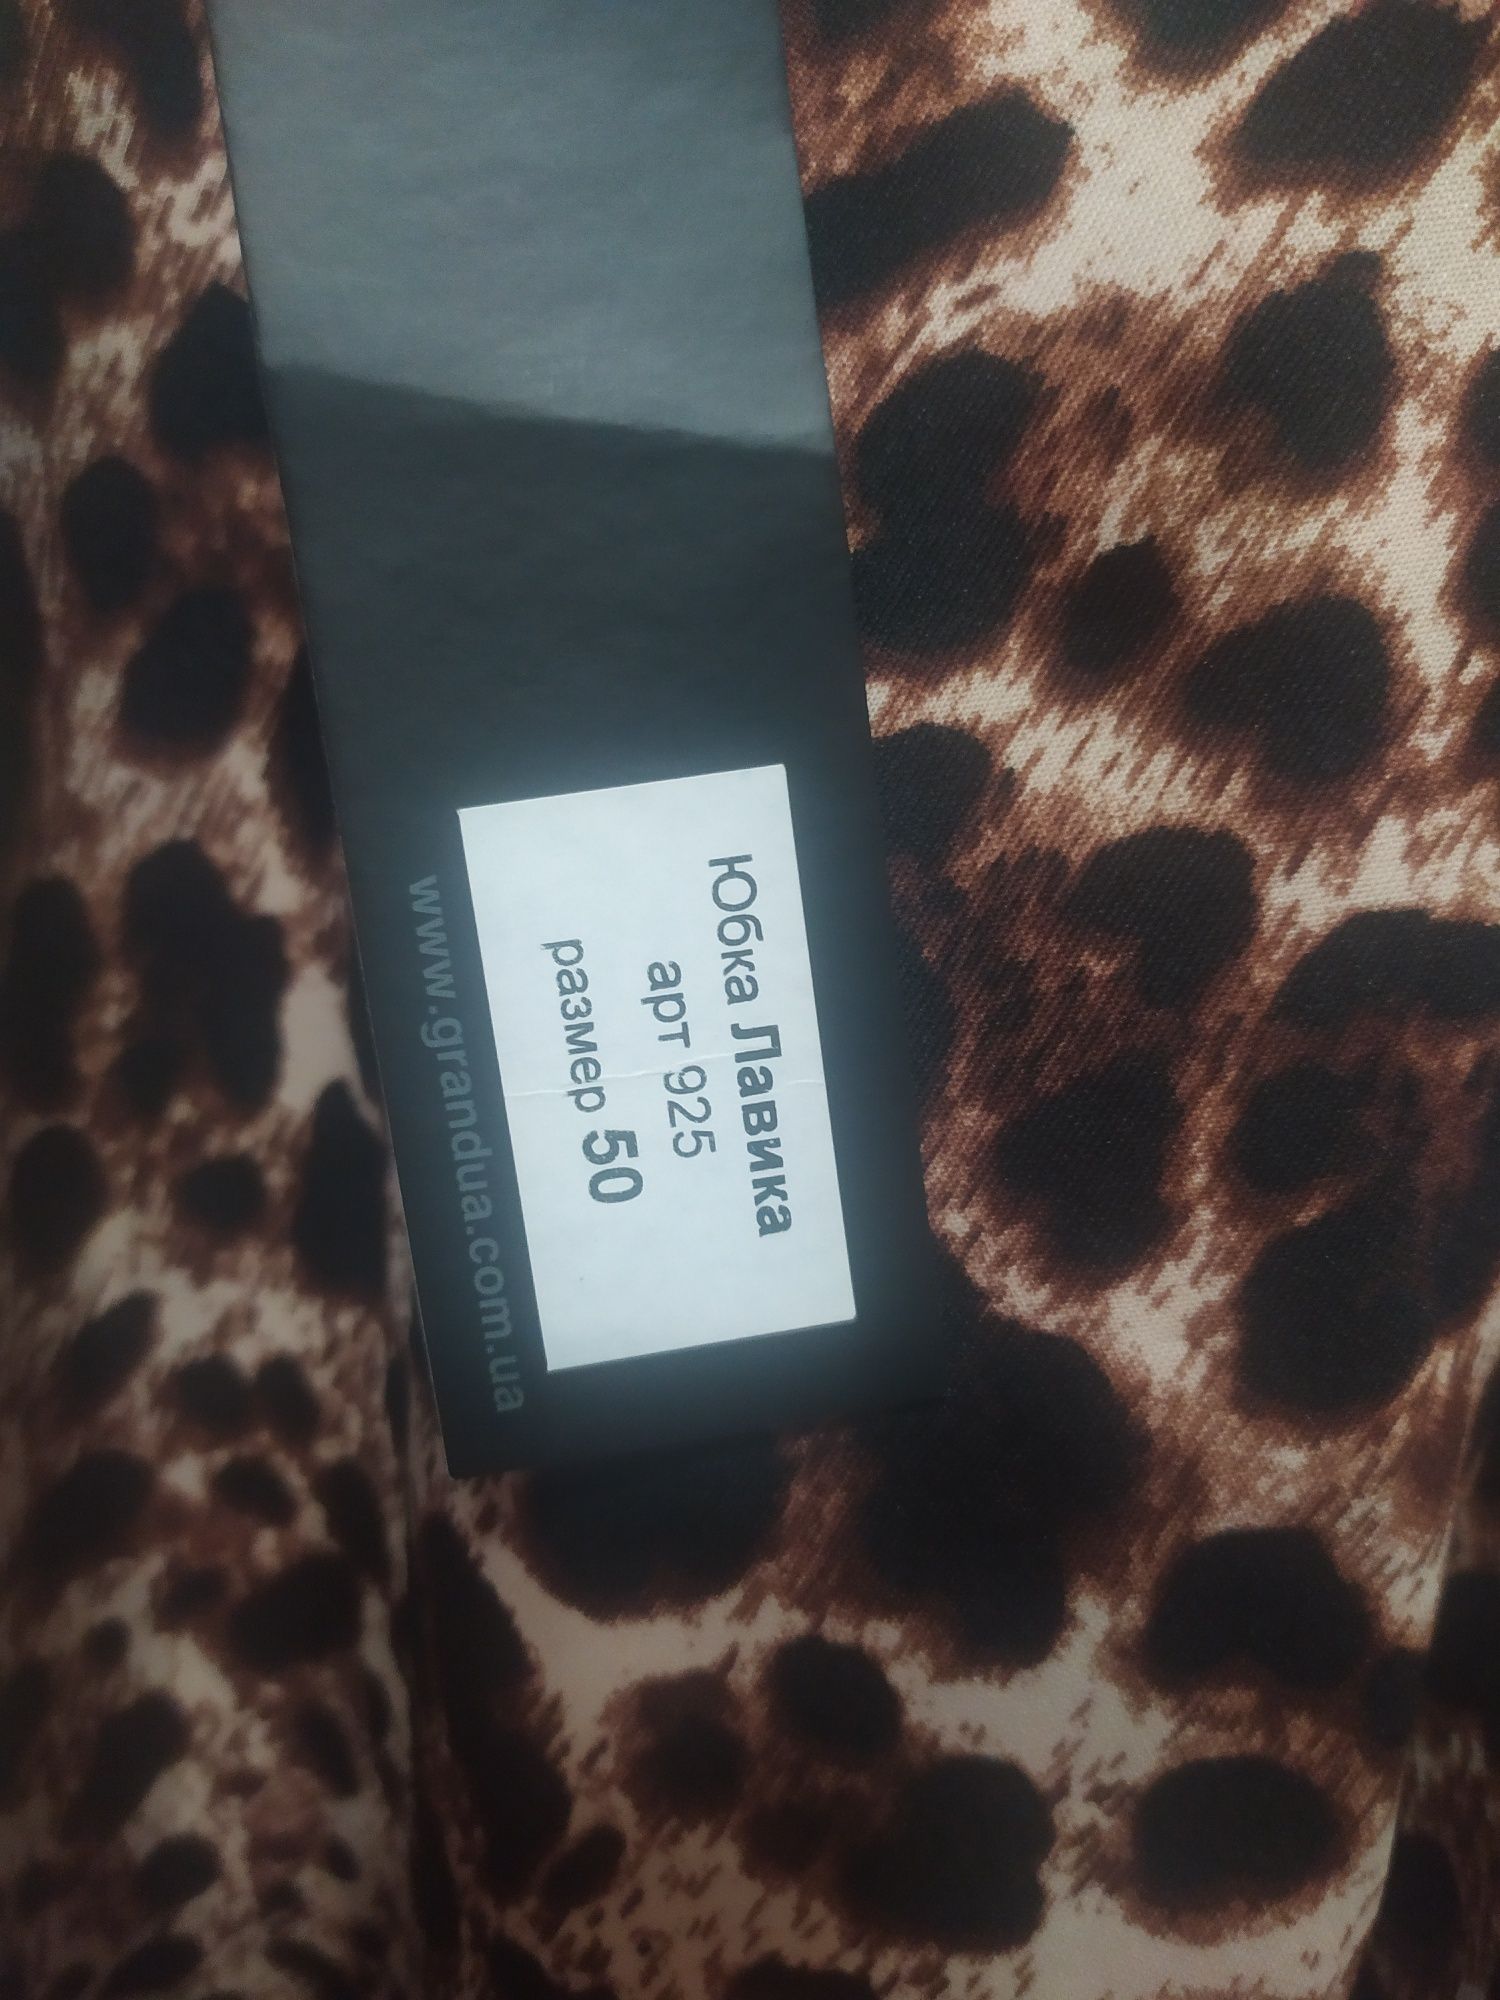 Леопардовая юбка